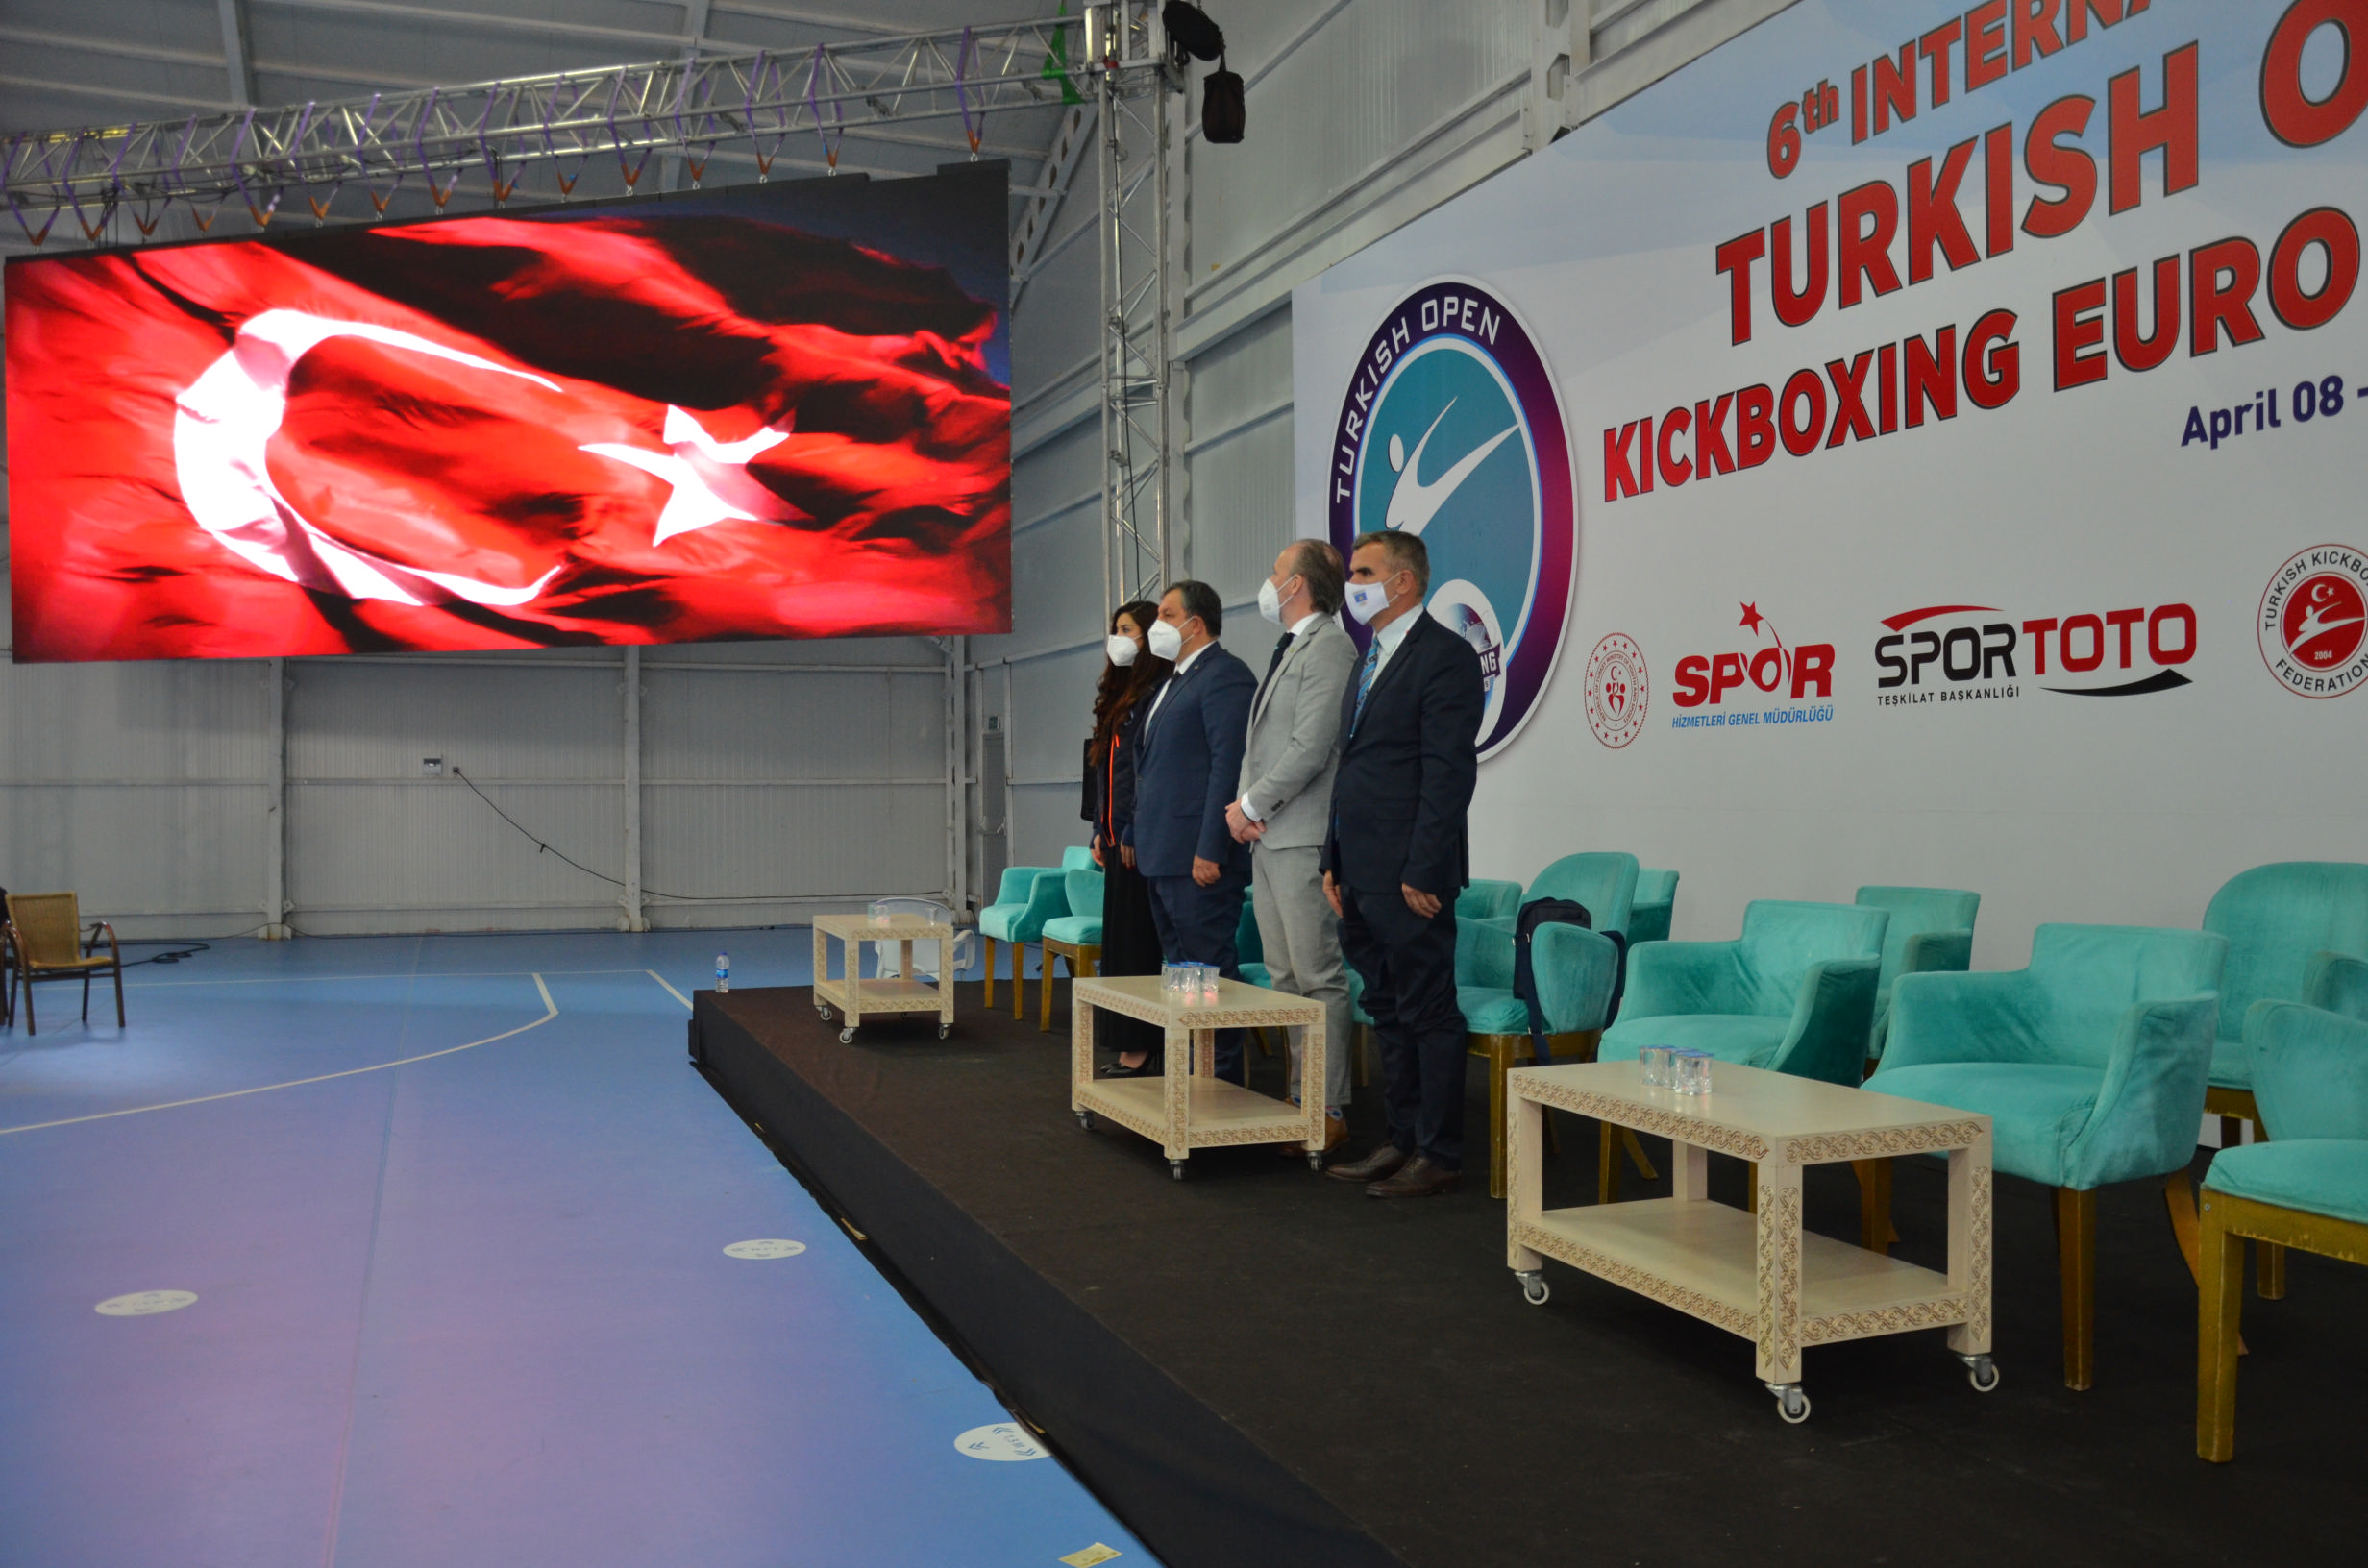 6. Uluslararası Türkiye Açık Kick Boks Avrupa Kupası Sona Erdi